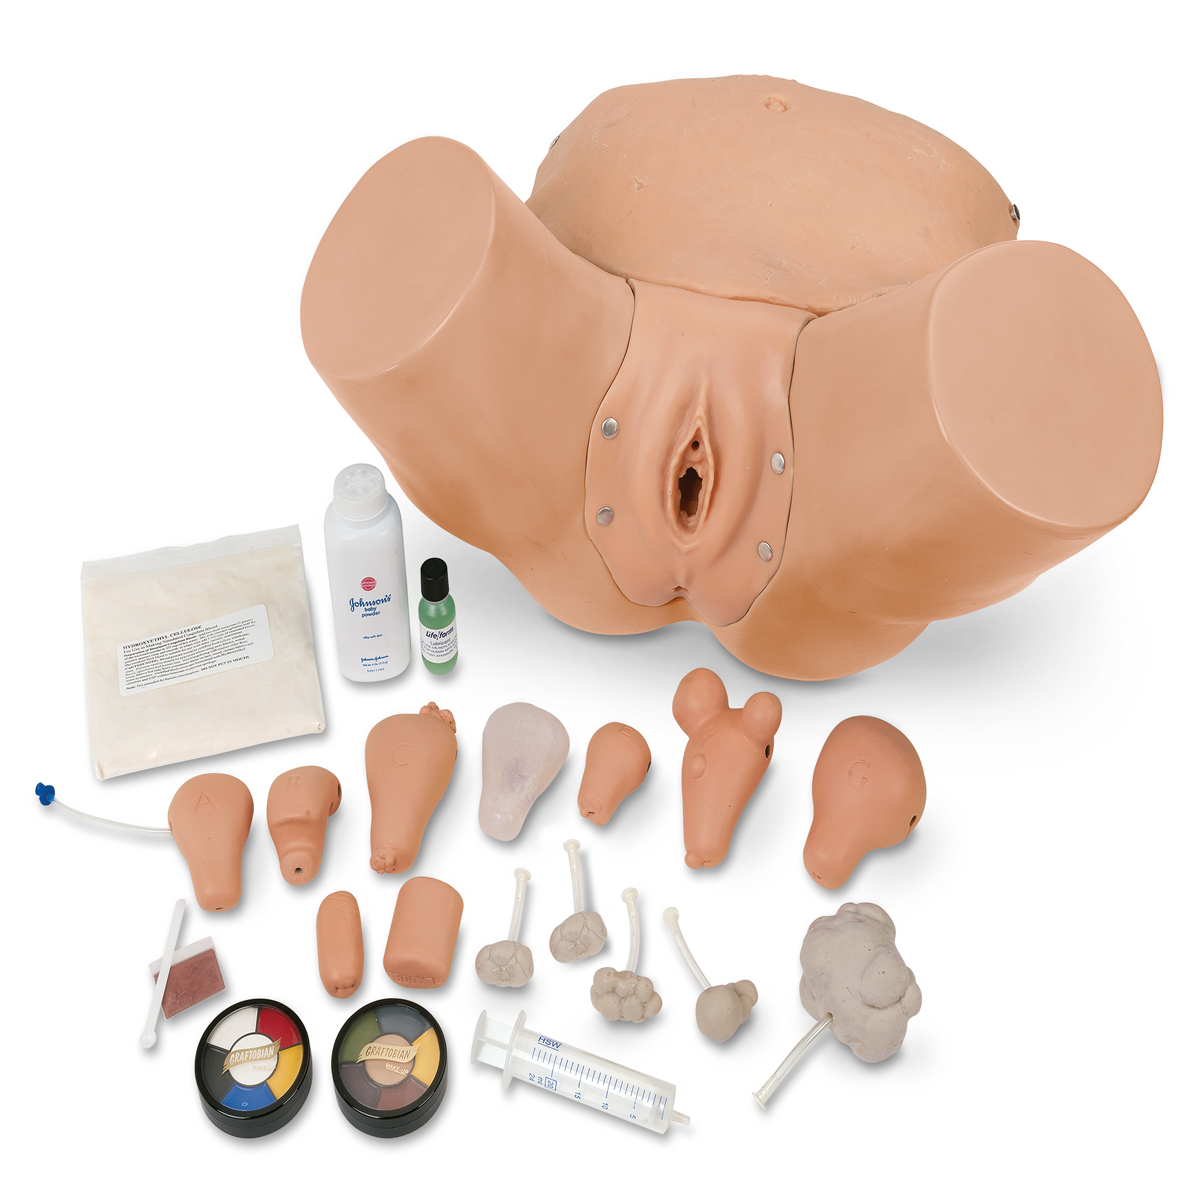 Усовершенствованный симулятор для обучения
гинекологическому обследованию и обследованию
области таза